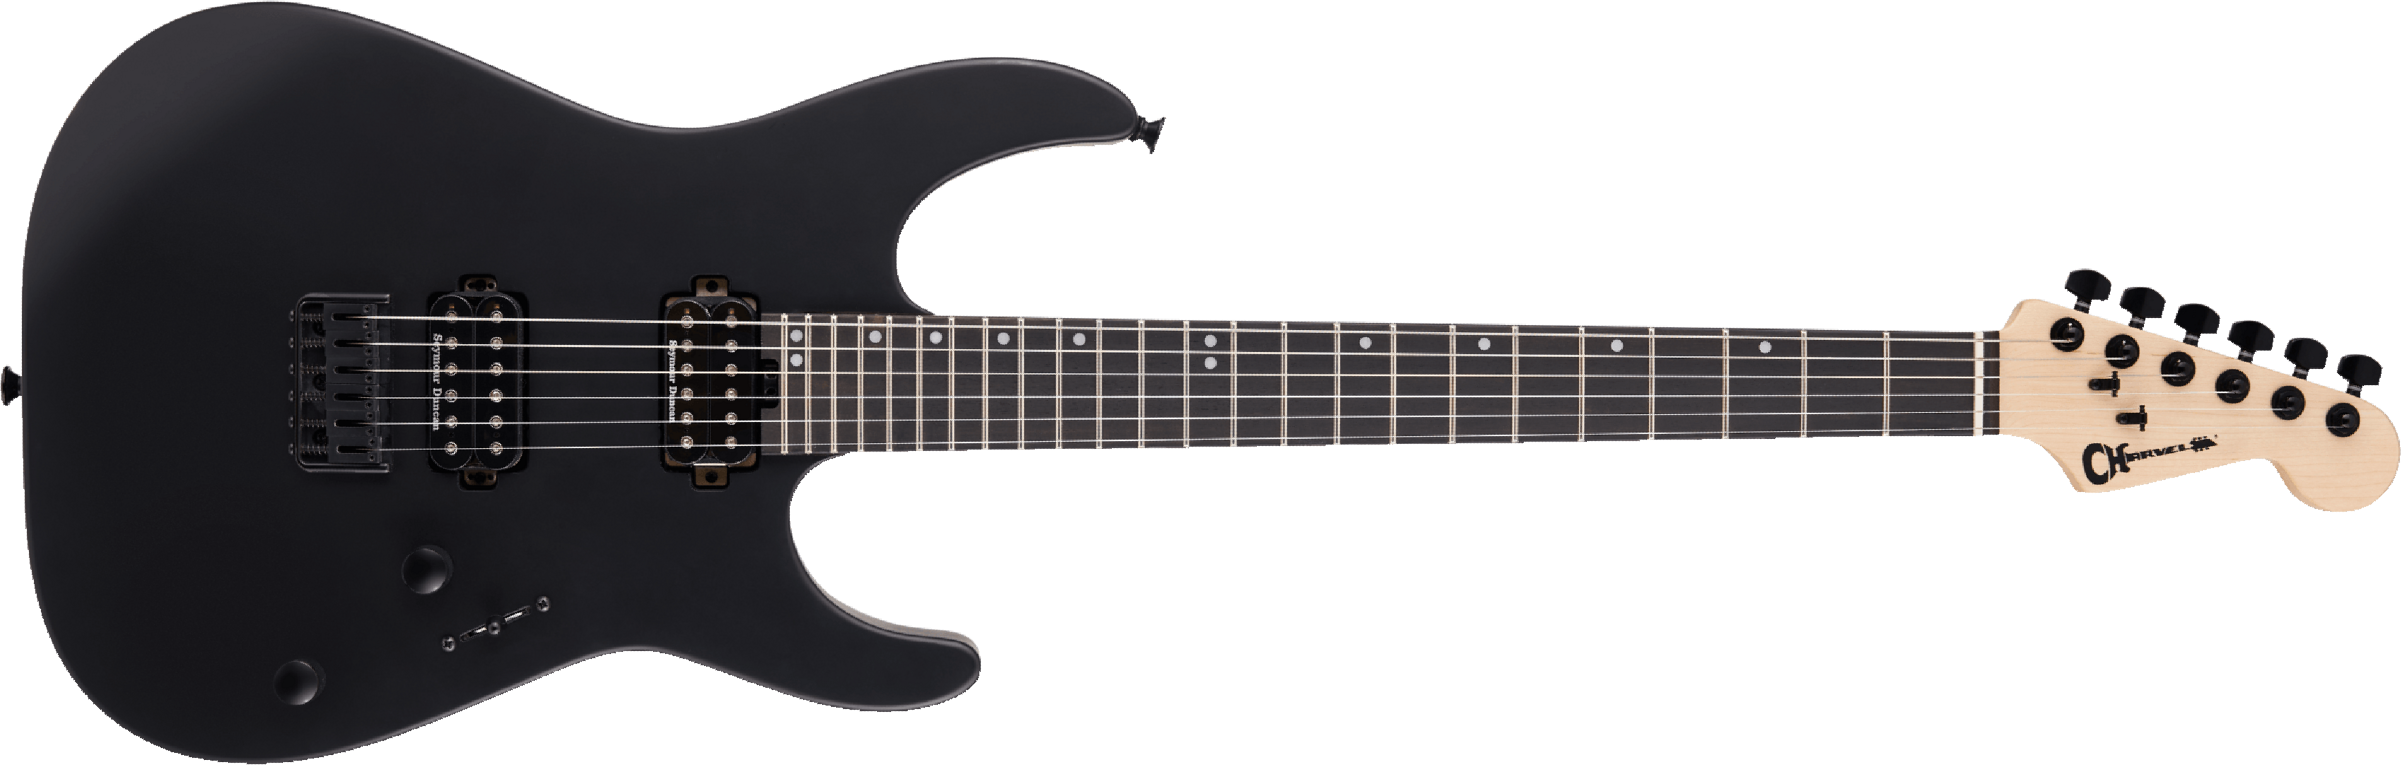 Charvel Dinky Dk24 Hh Ht E Pro-mod 2h Seymour Duncan Eb - Satin Black - Guitarra eléctrica con forma de str. - Main picture